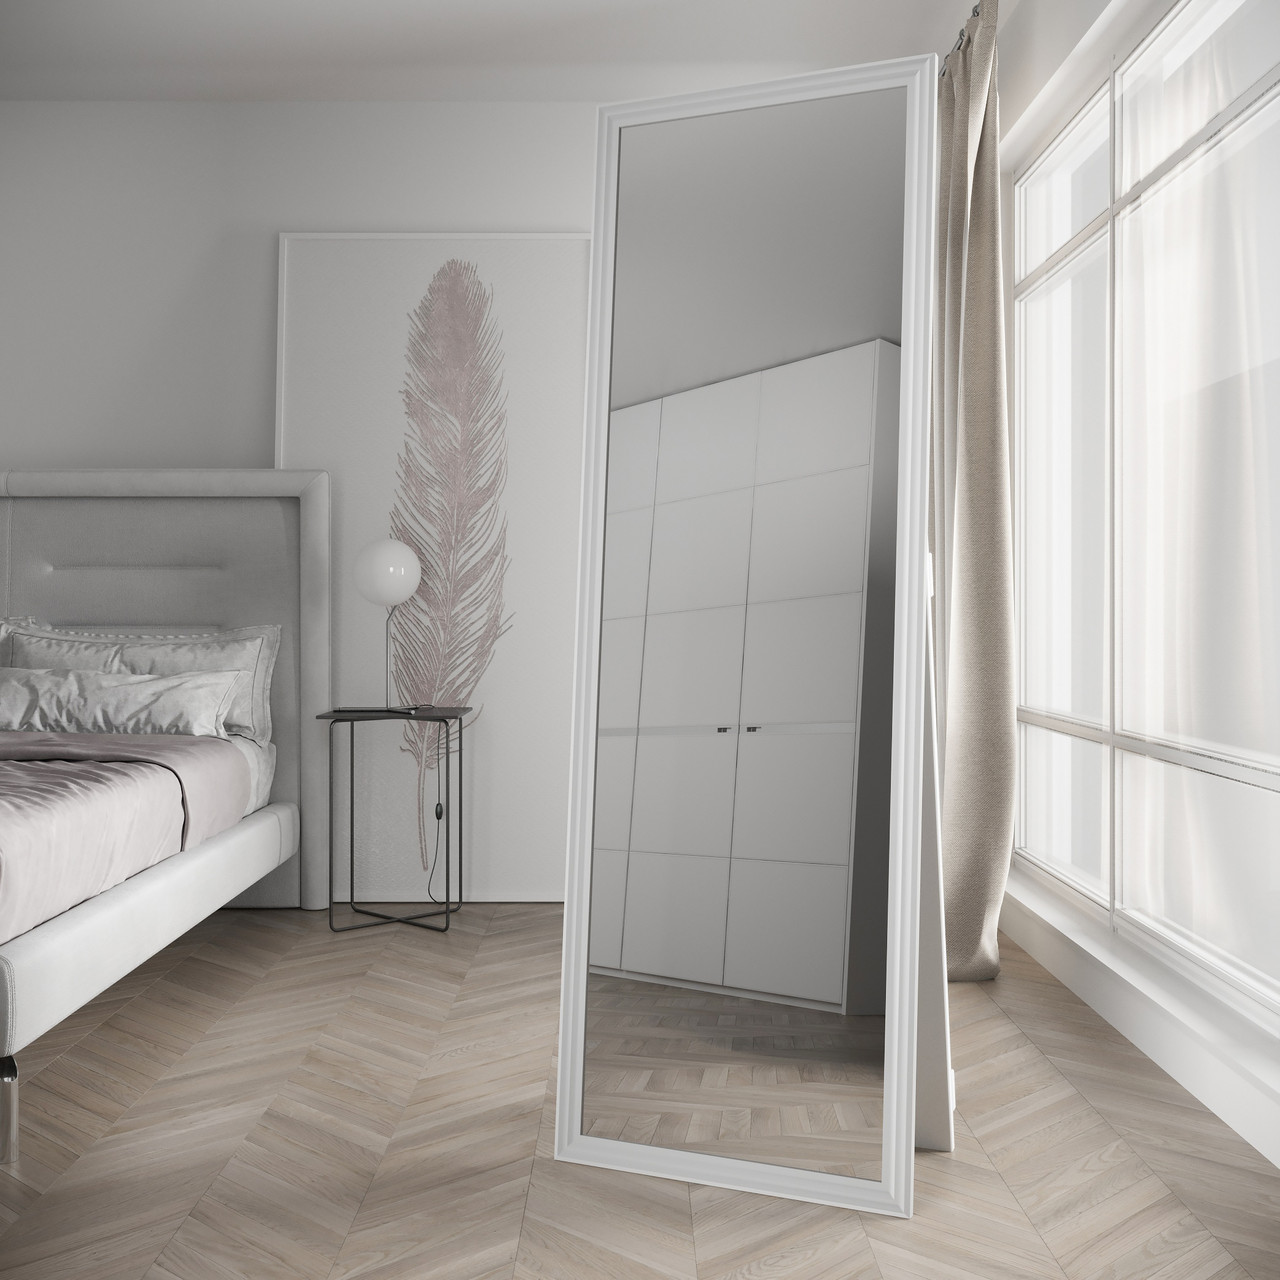 

Напольное зеркало ростовое Белое 178х58 Black Mirror в полный рост для дома в прихожую спальню коридор